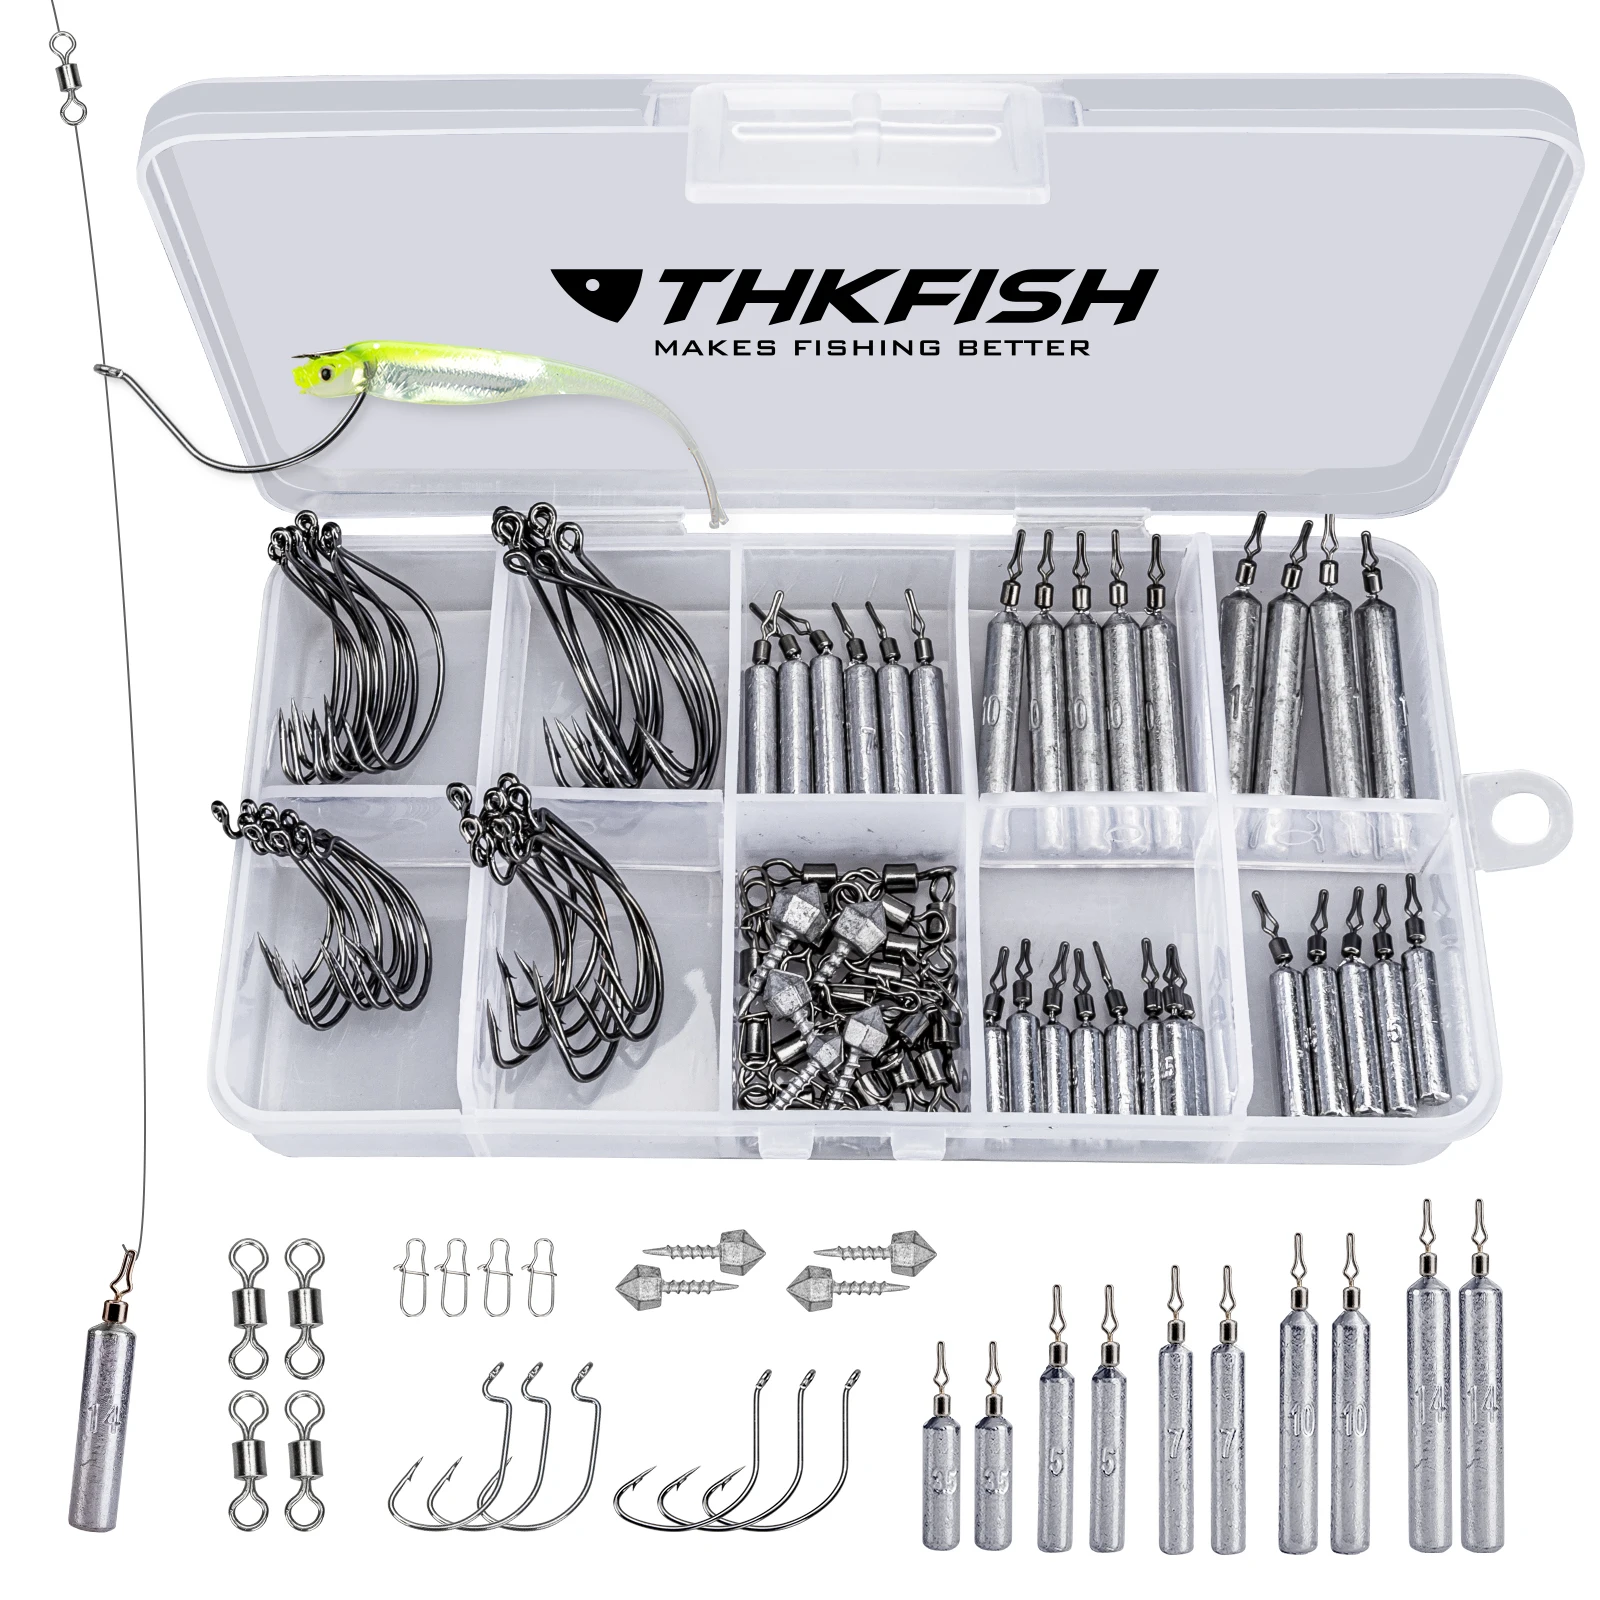 Thkfish-خطافات مع منصة صيد ، مجموعة من الملحقات لصيد الأسماك مثل الغطاسين ، معدات الصيد